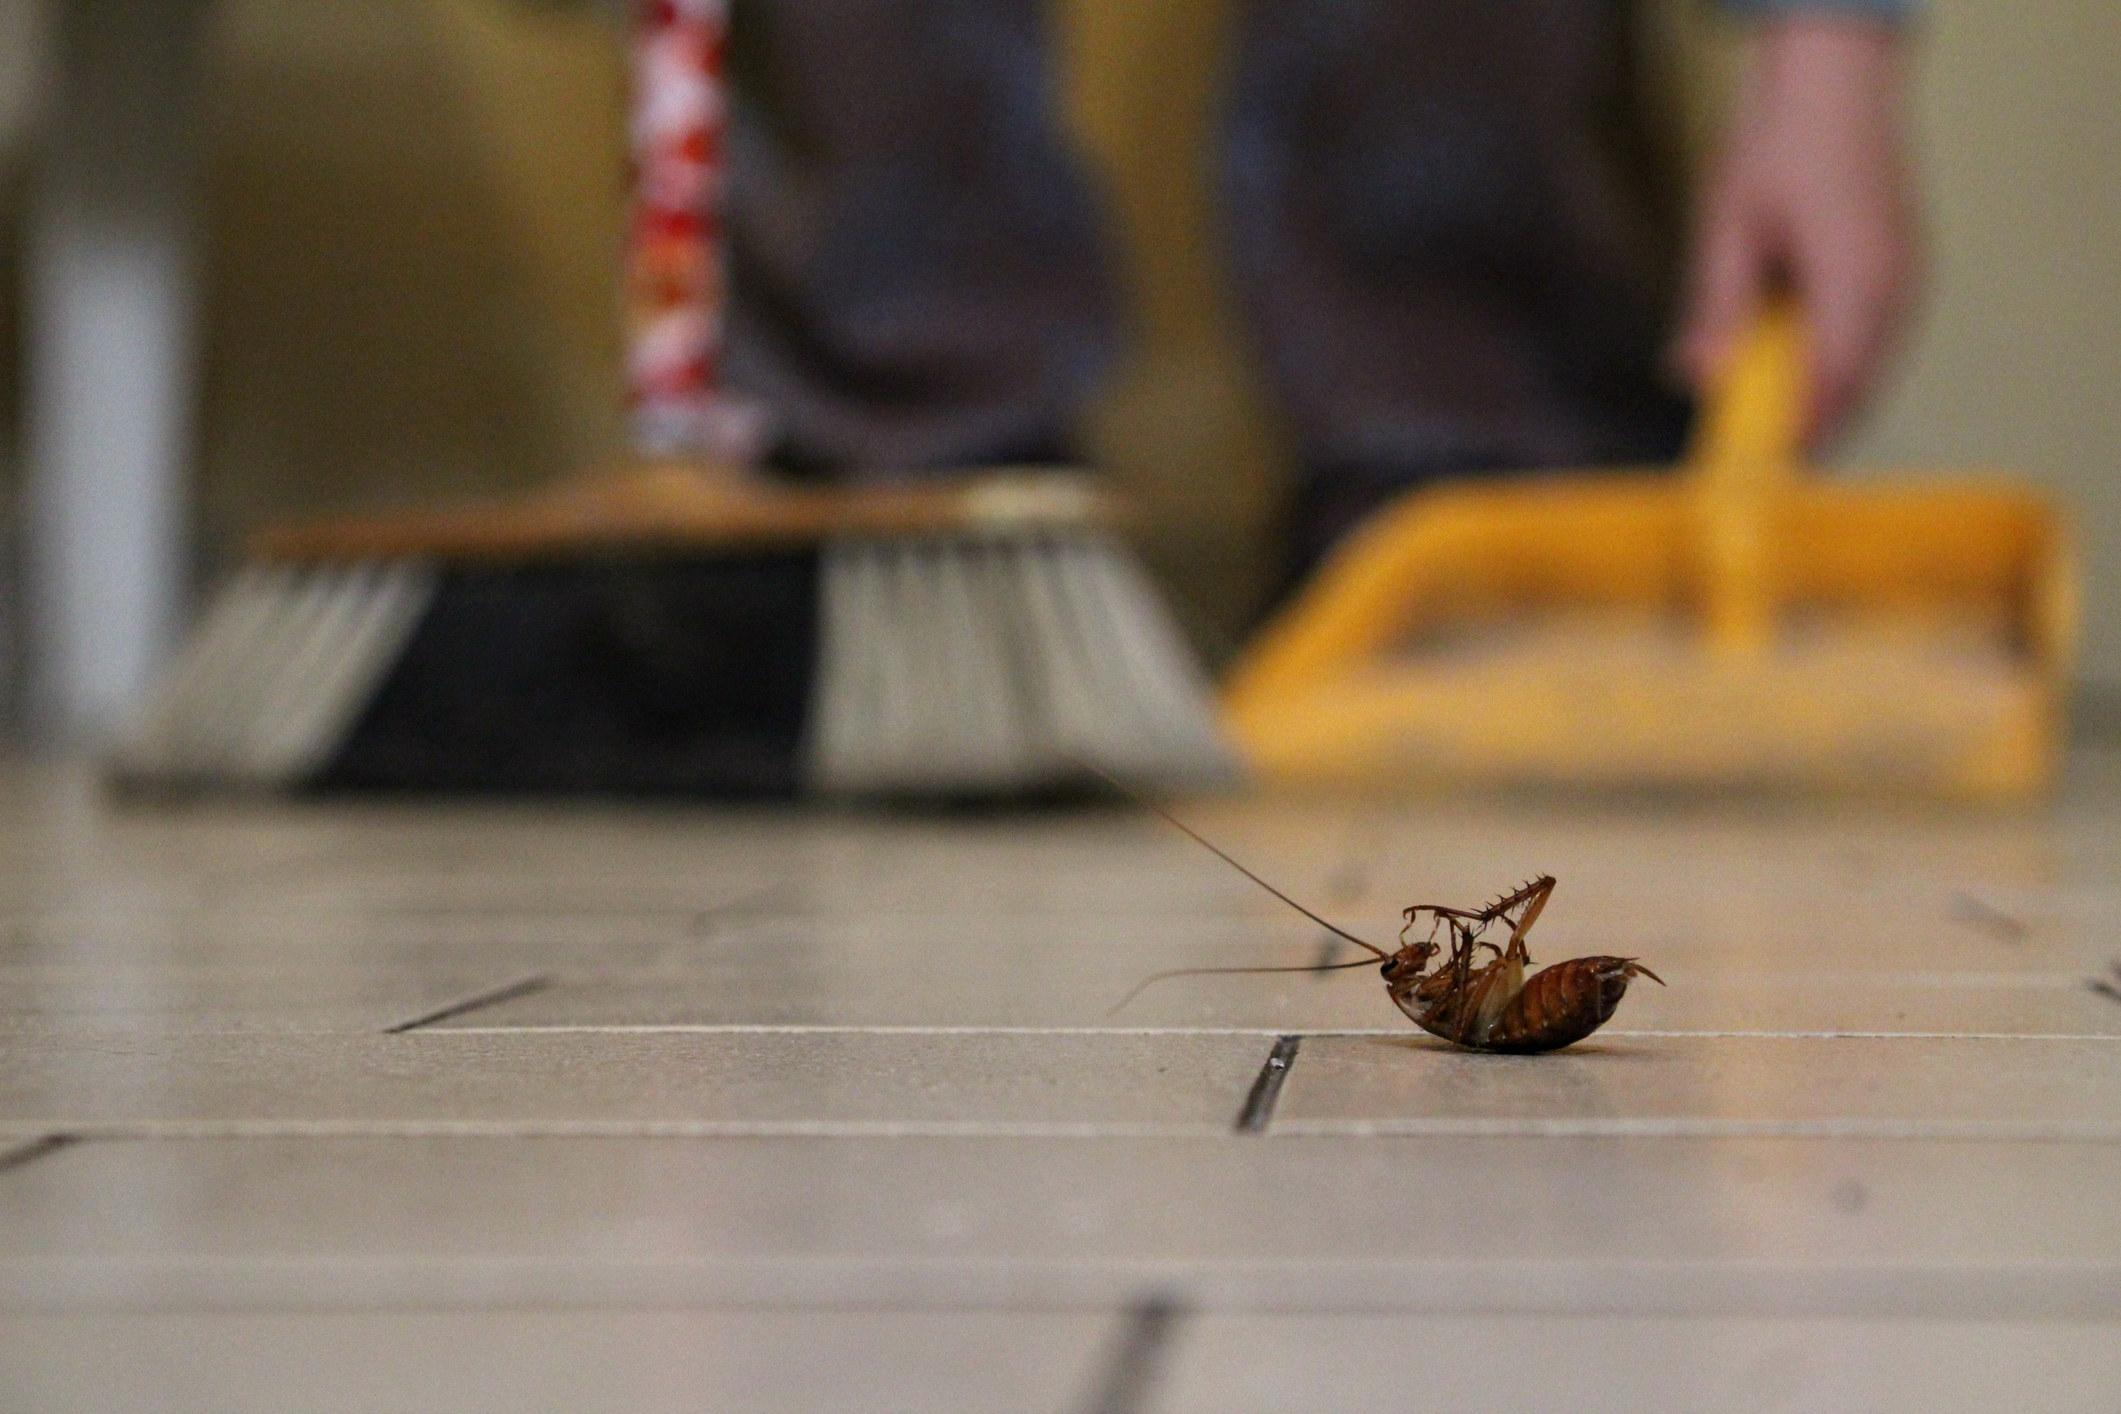 A dead cockroach on the floor